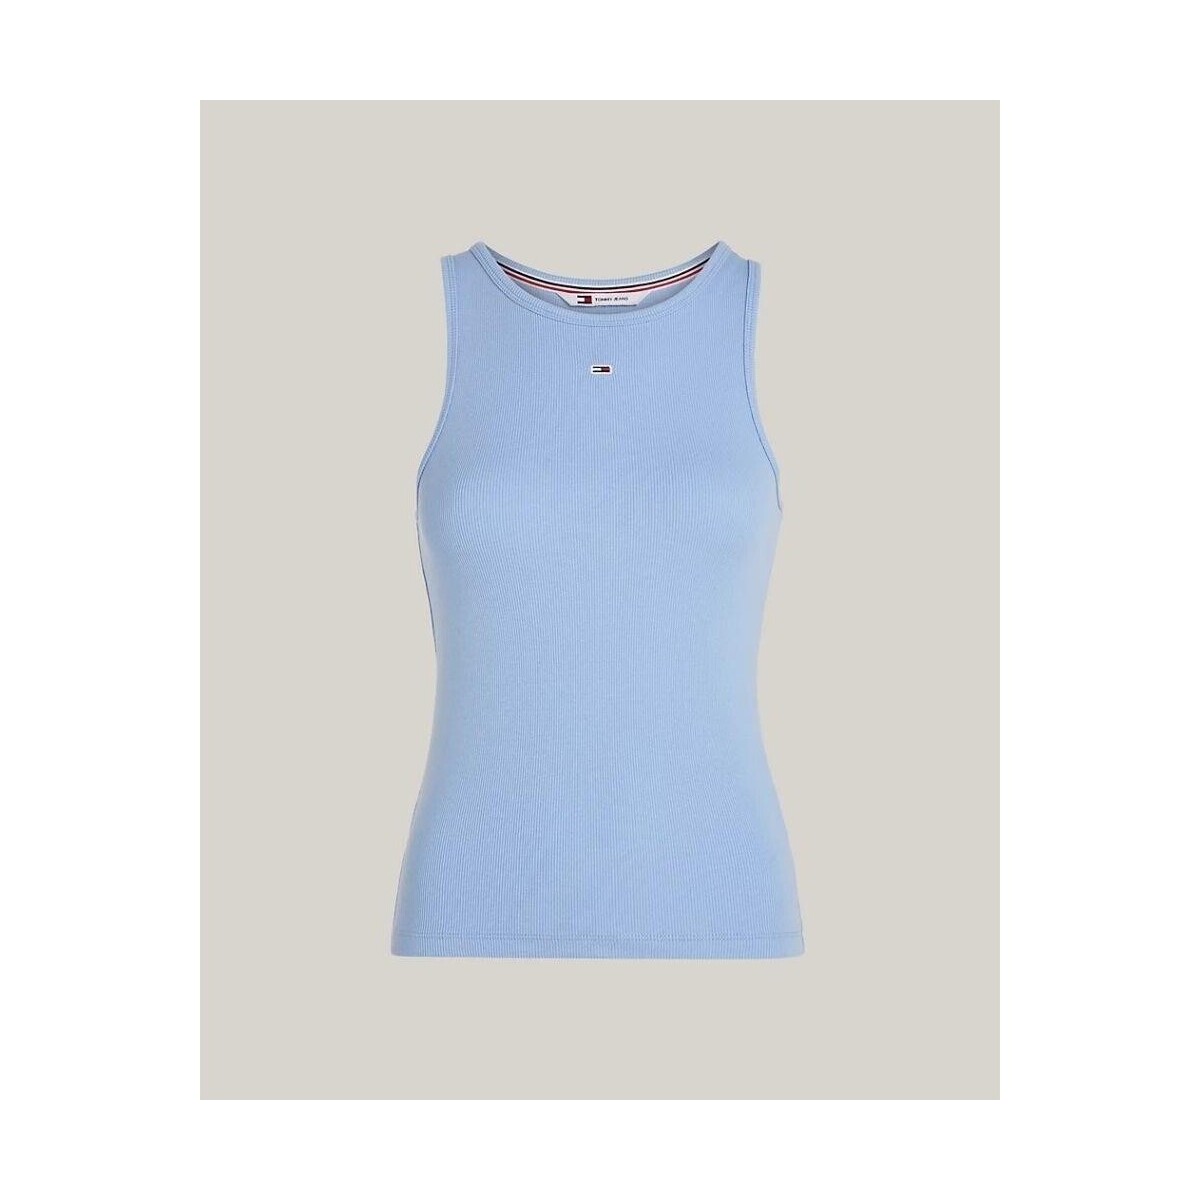 Îmbracaminte Femei Tricouri & Tricouri Polo Tommy Hilfiger DW0DW17382C3S albastru